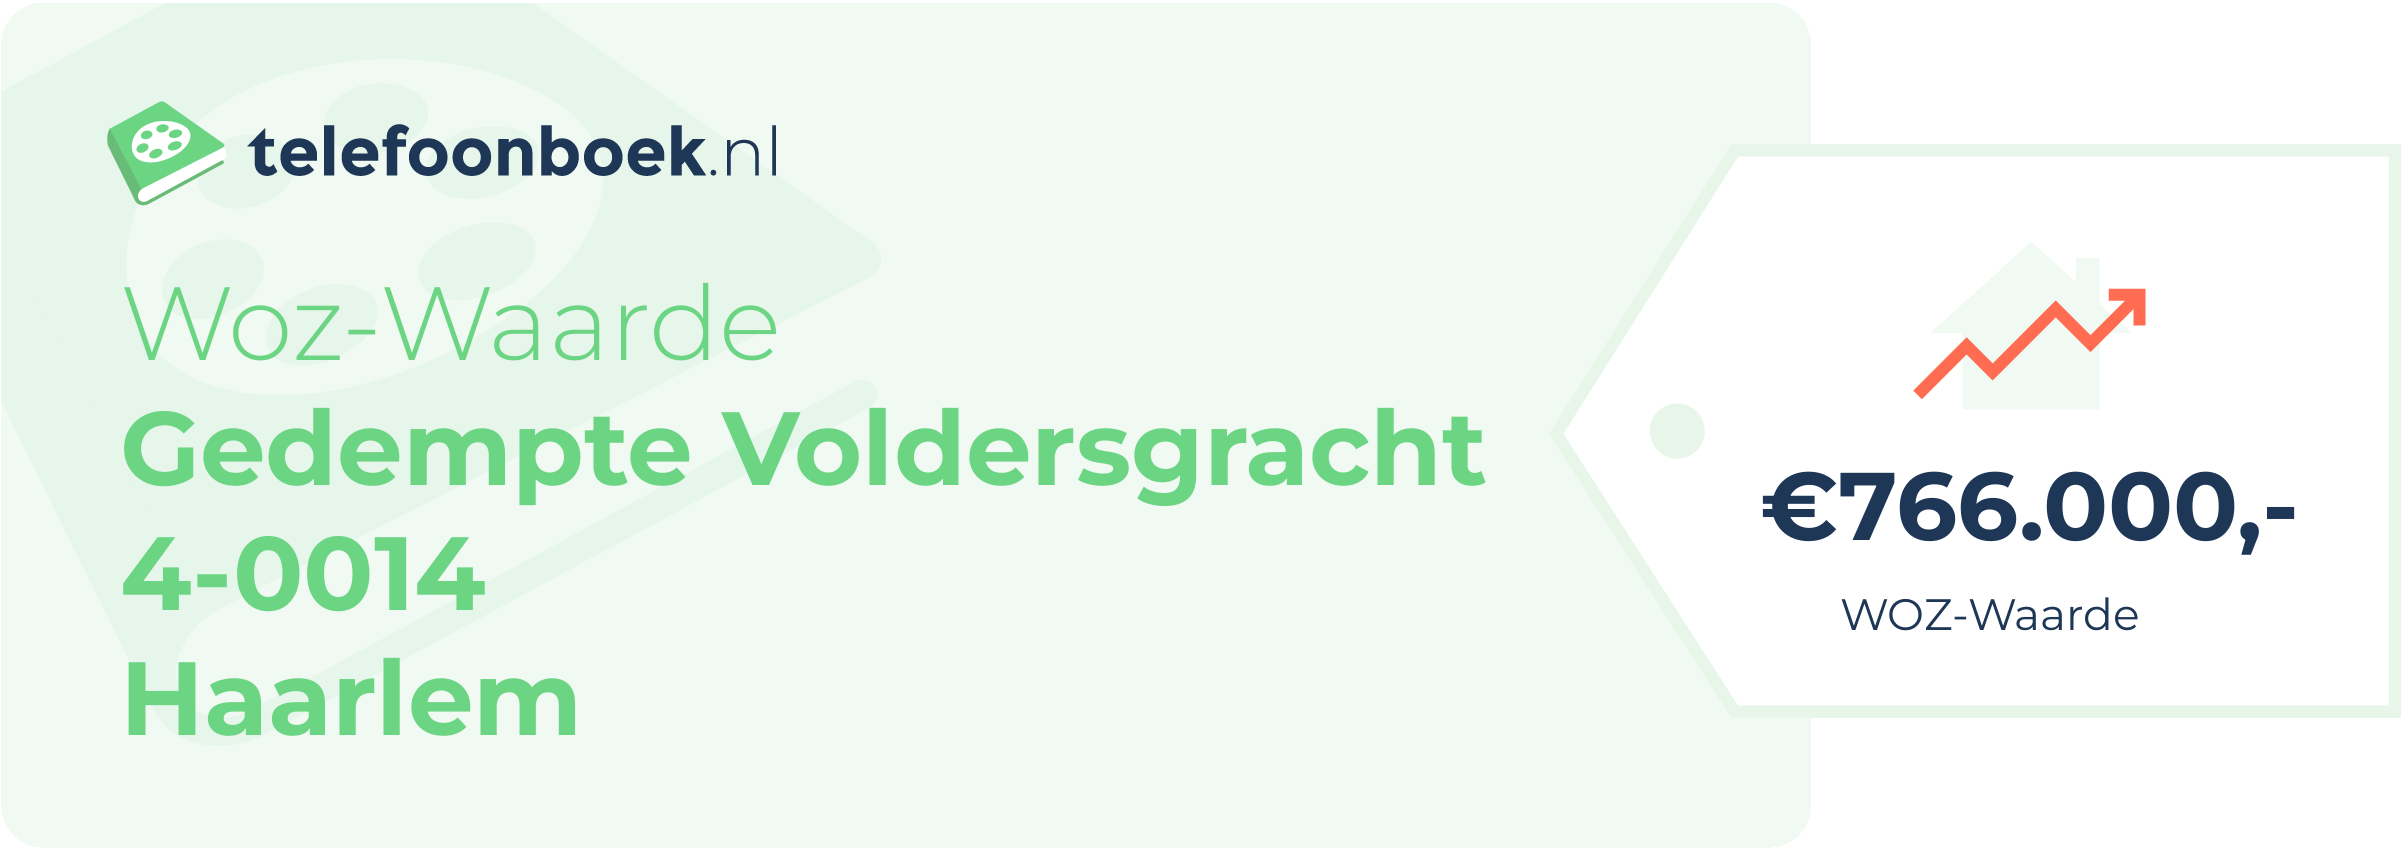 WOZ-waarde Gedempte Voldersgracht 4-0014 Haarlem